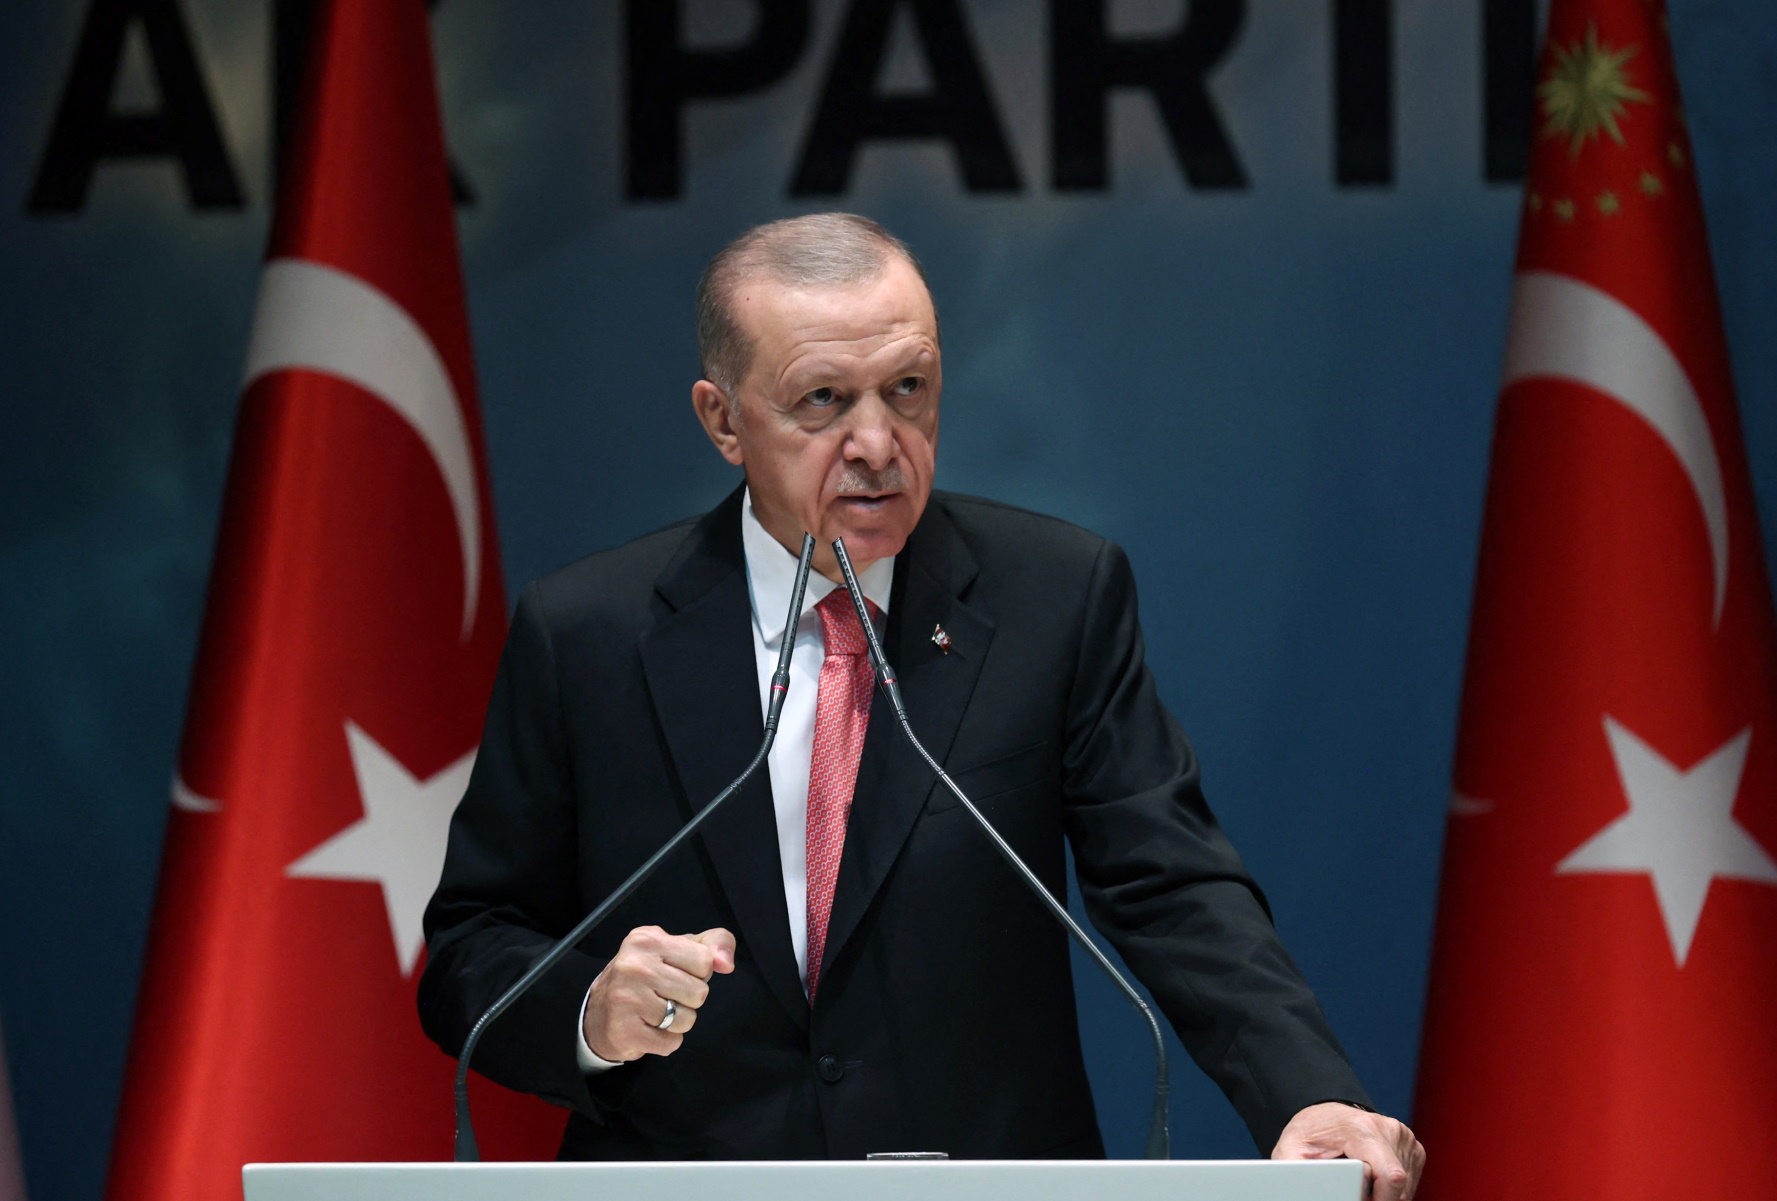 Τουρκία: «Δεν θα πούμε ”ναι” στη Σουηδία για το ΝΑΤΟ, όσο καίνε το Κοράνι», είπε ο Ερντογάν